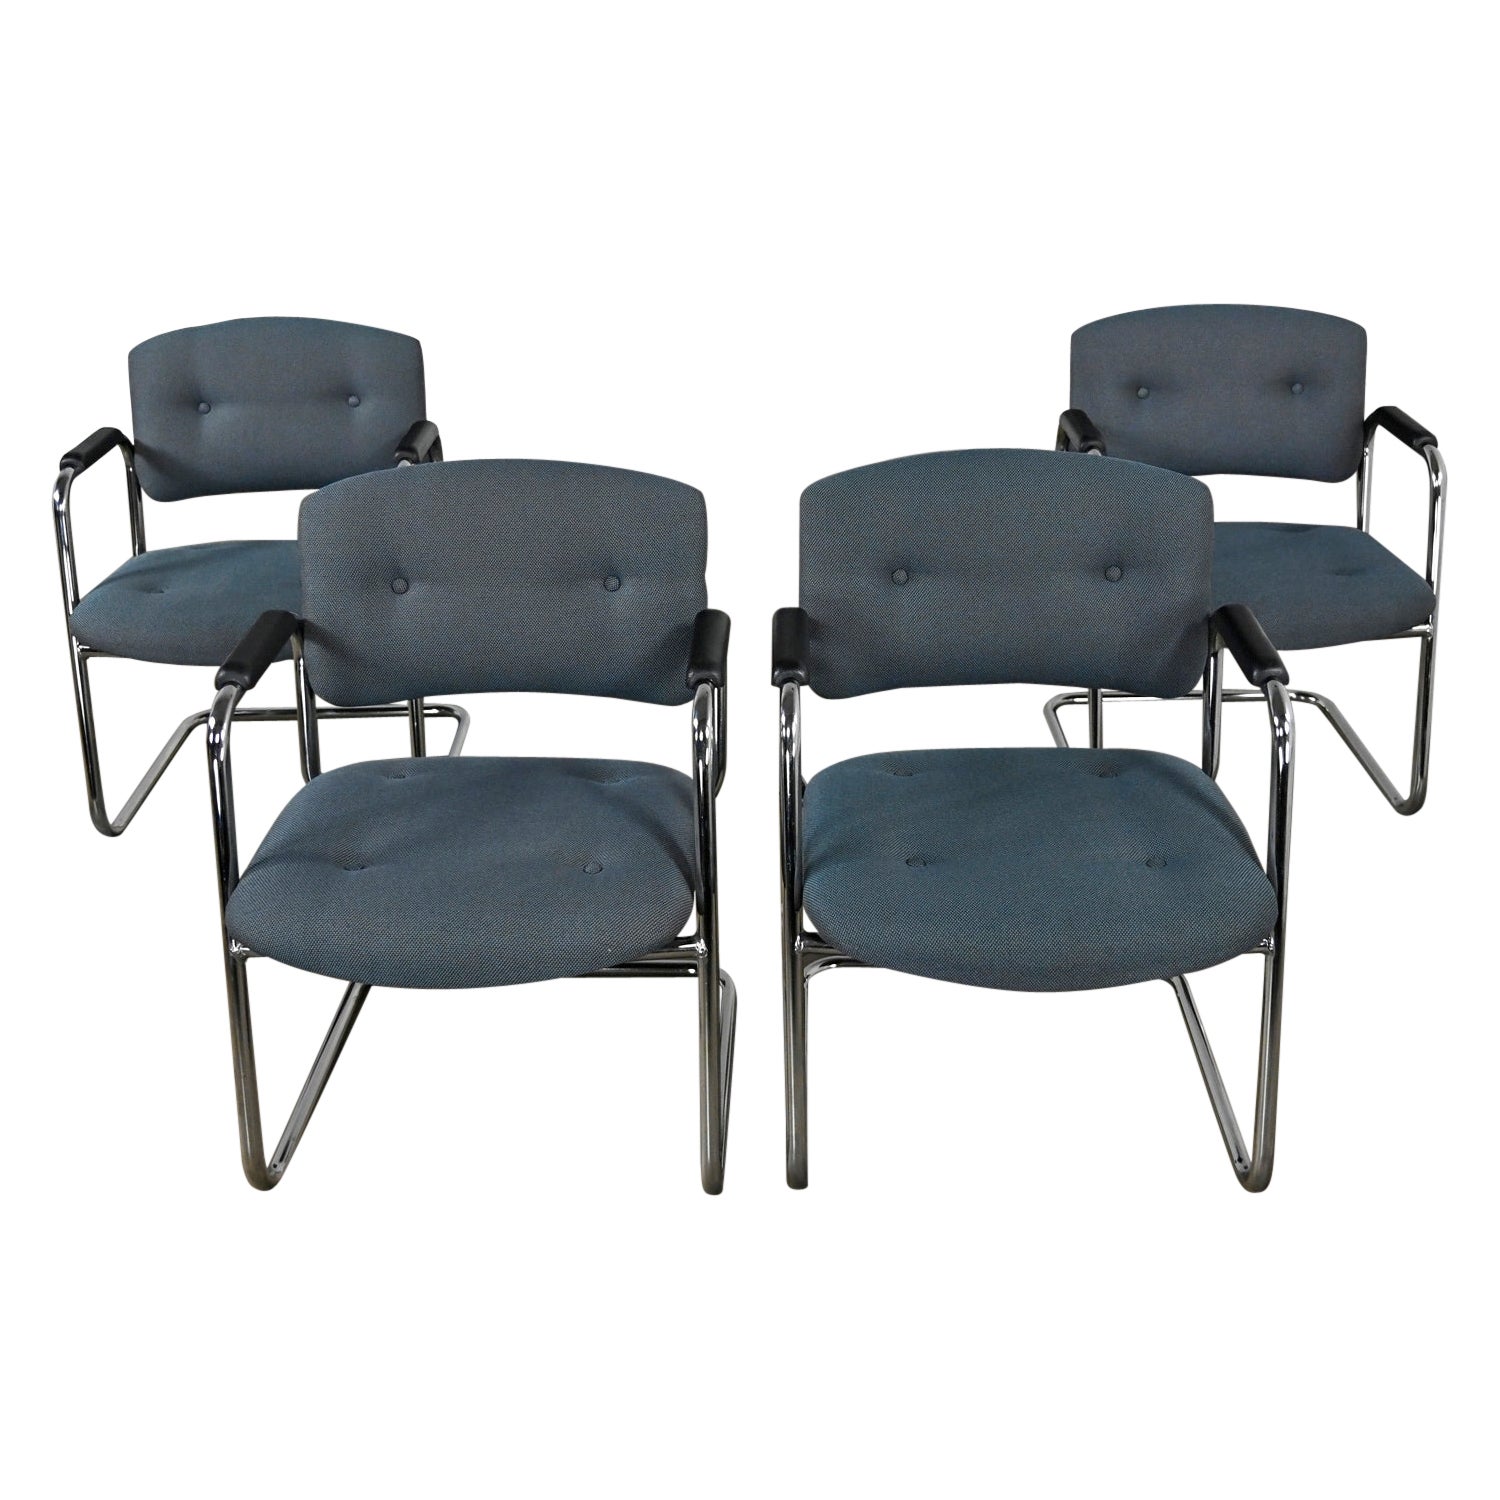 Fin du 20e siècle, chaises cantilever grises et chromées Style Steelcase Ensemble de 4